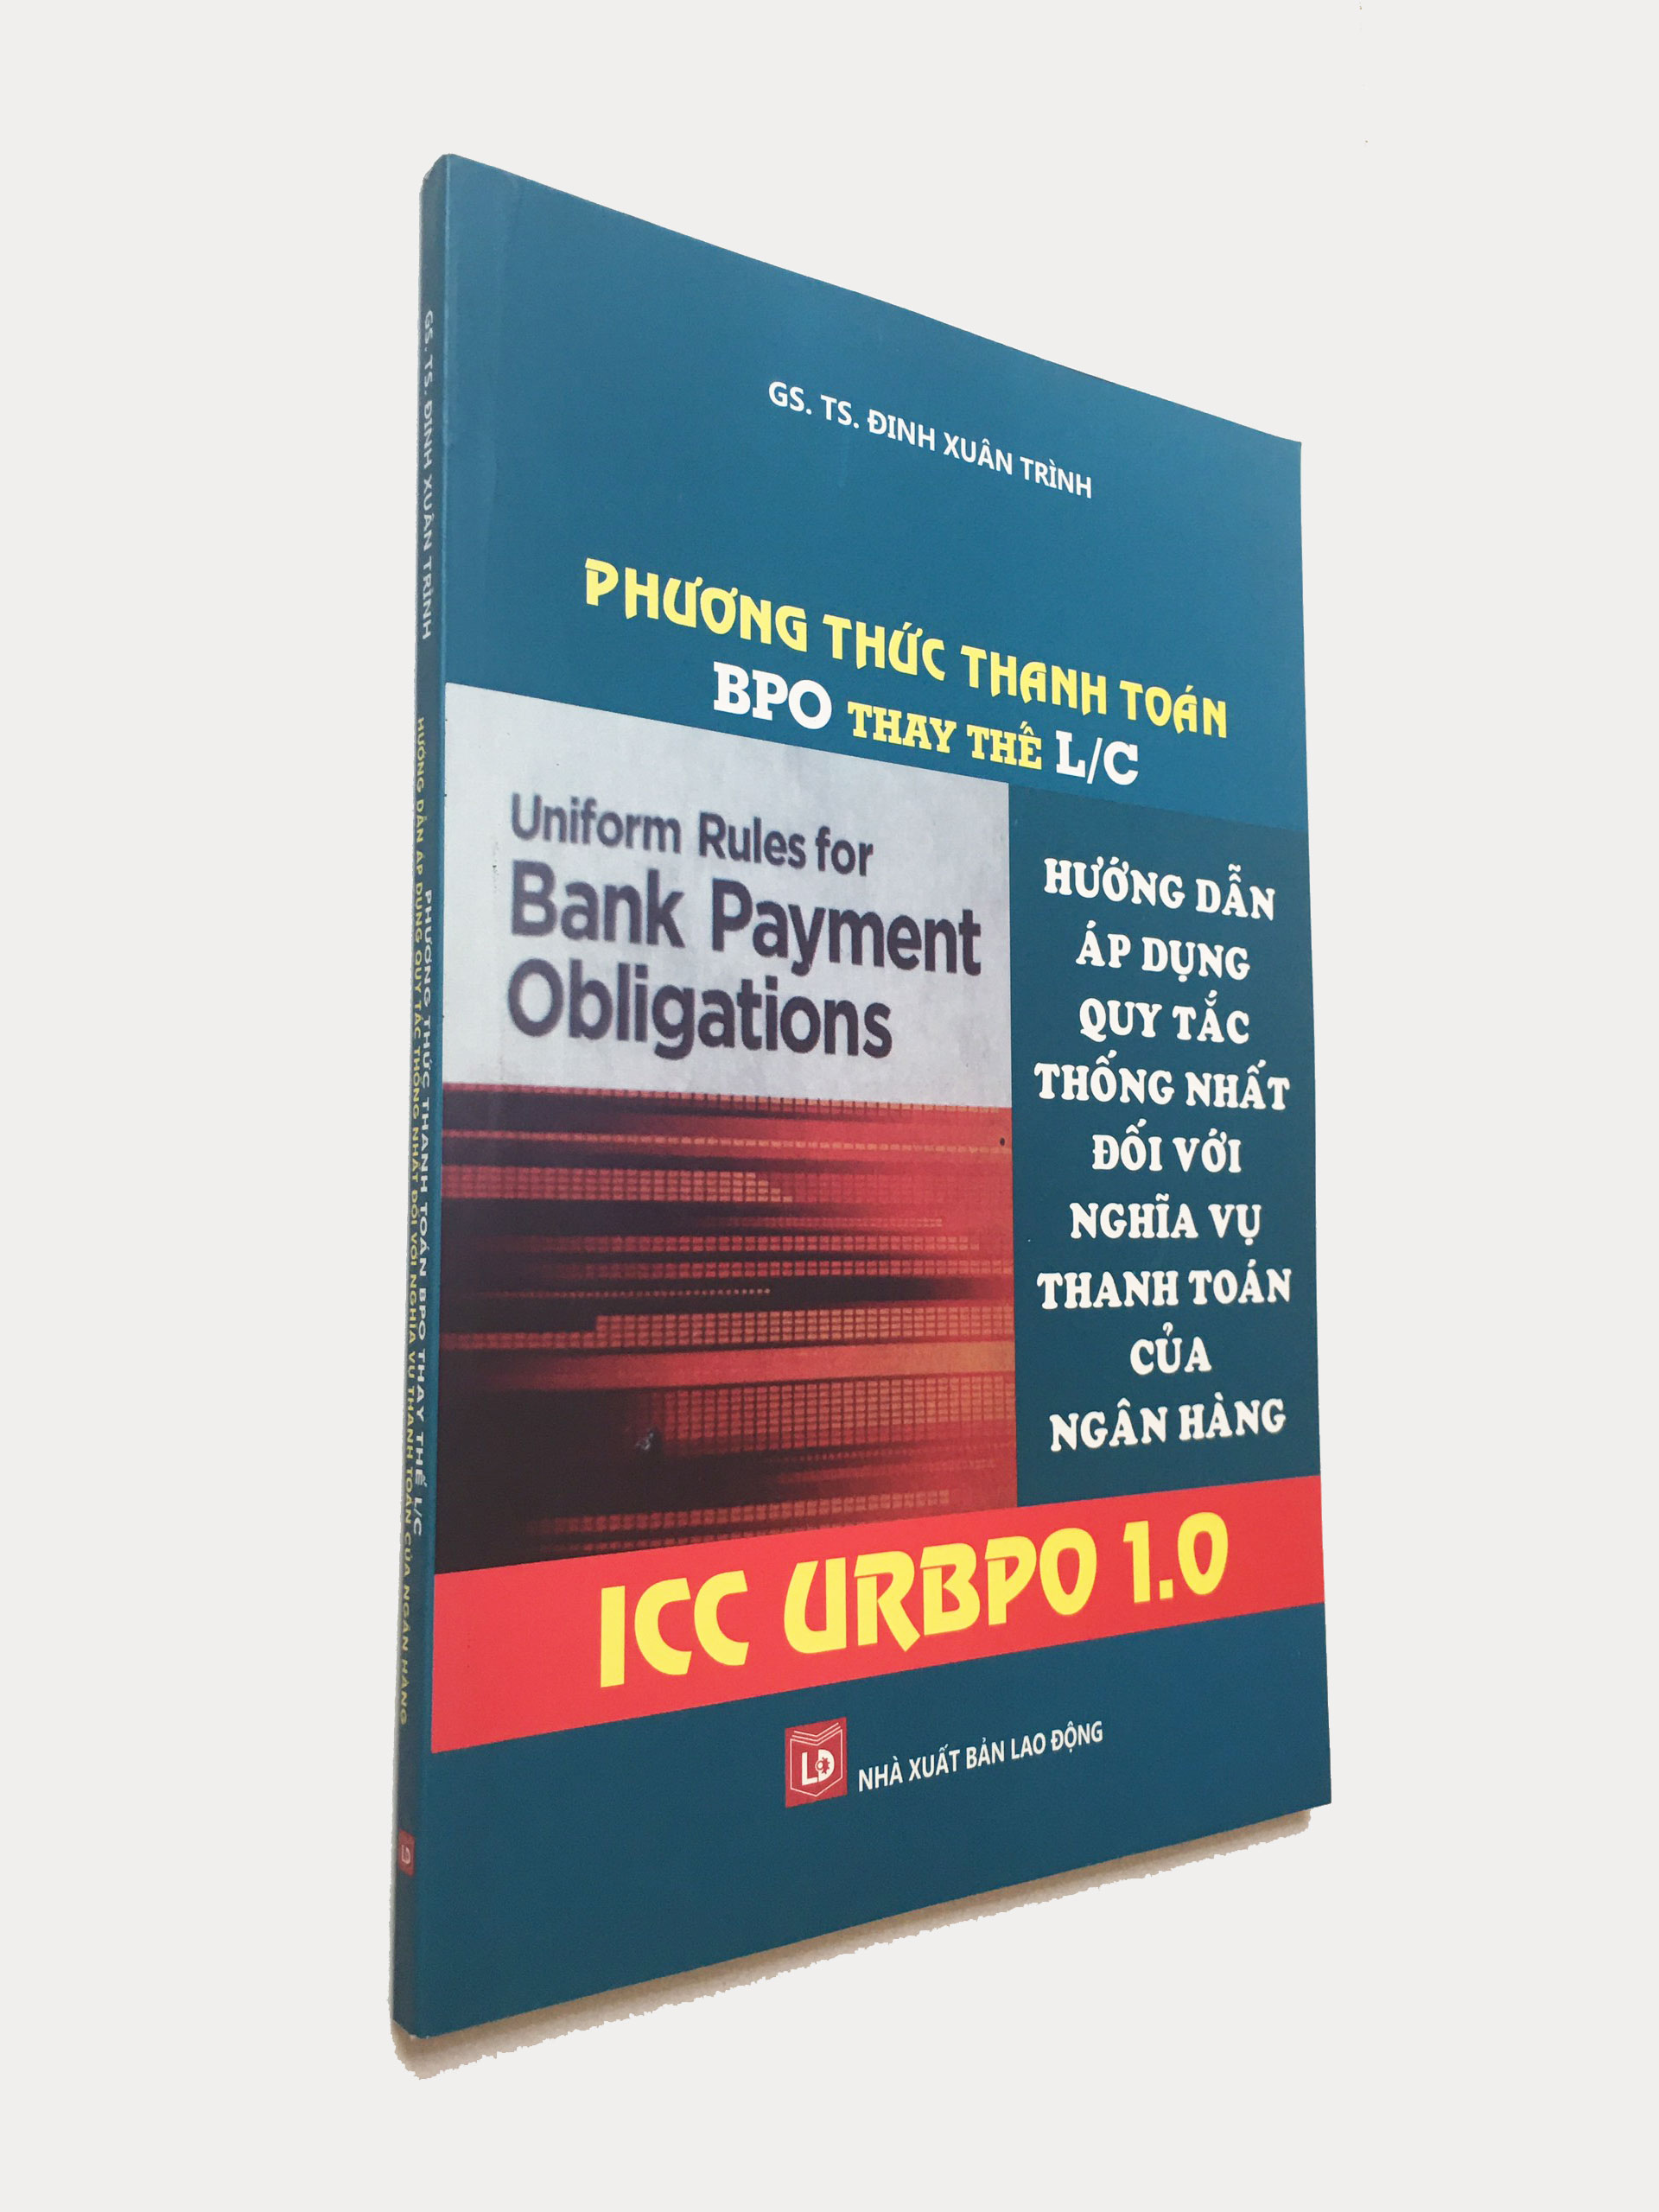 Phương thức thanh toán BPO thay thế L/C Hướng dẫn áp dụng quy tắc thống nhất đối với nghĩa vụ thanh toán của ngân hàng